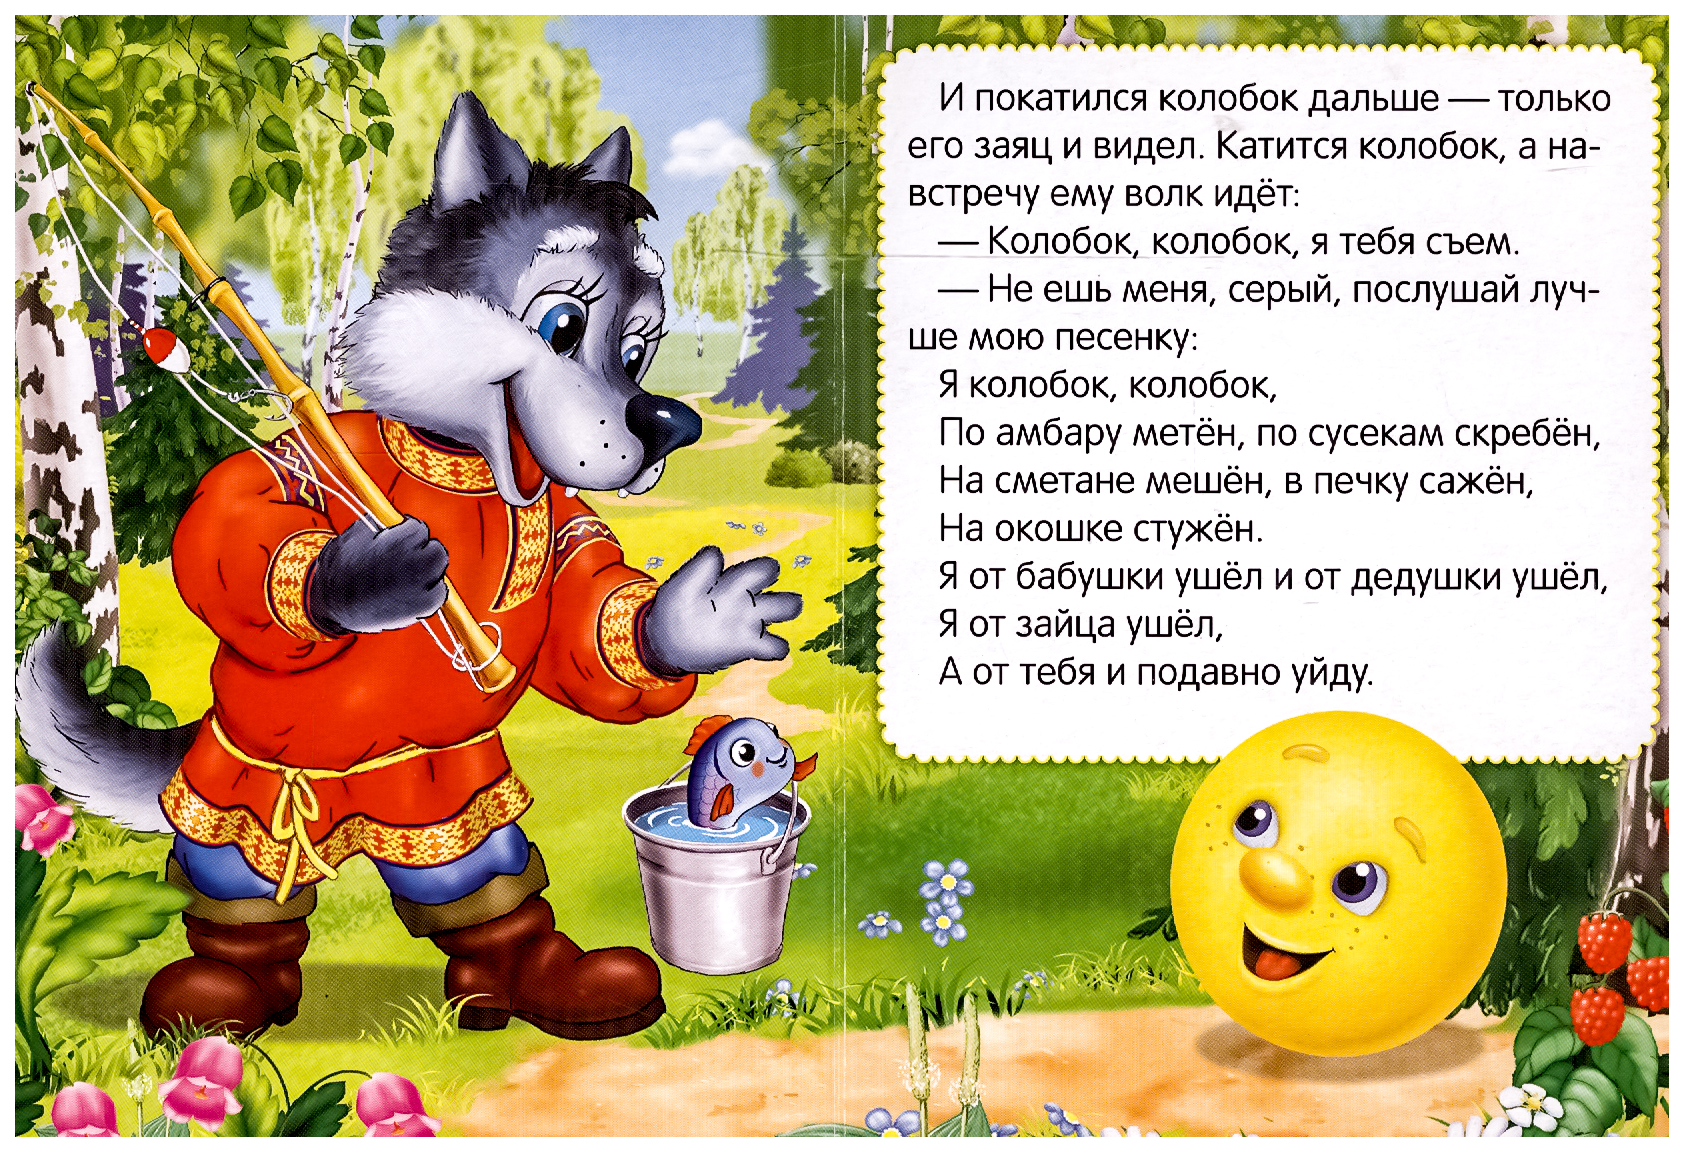 Русские народные сказки для детей